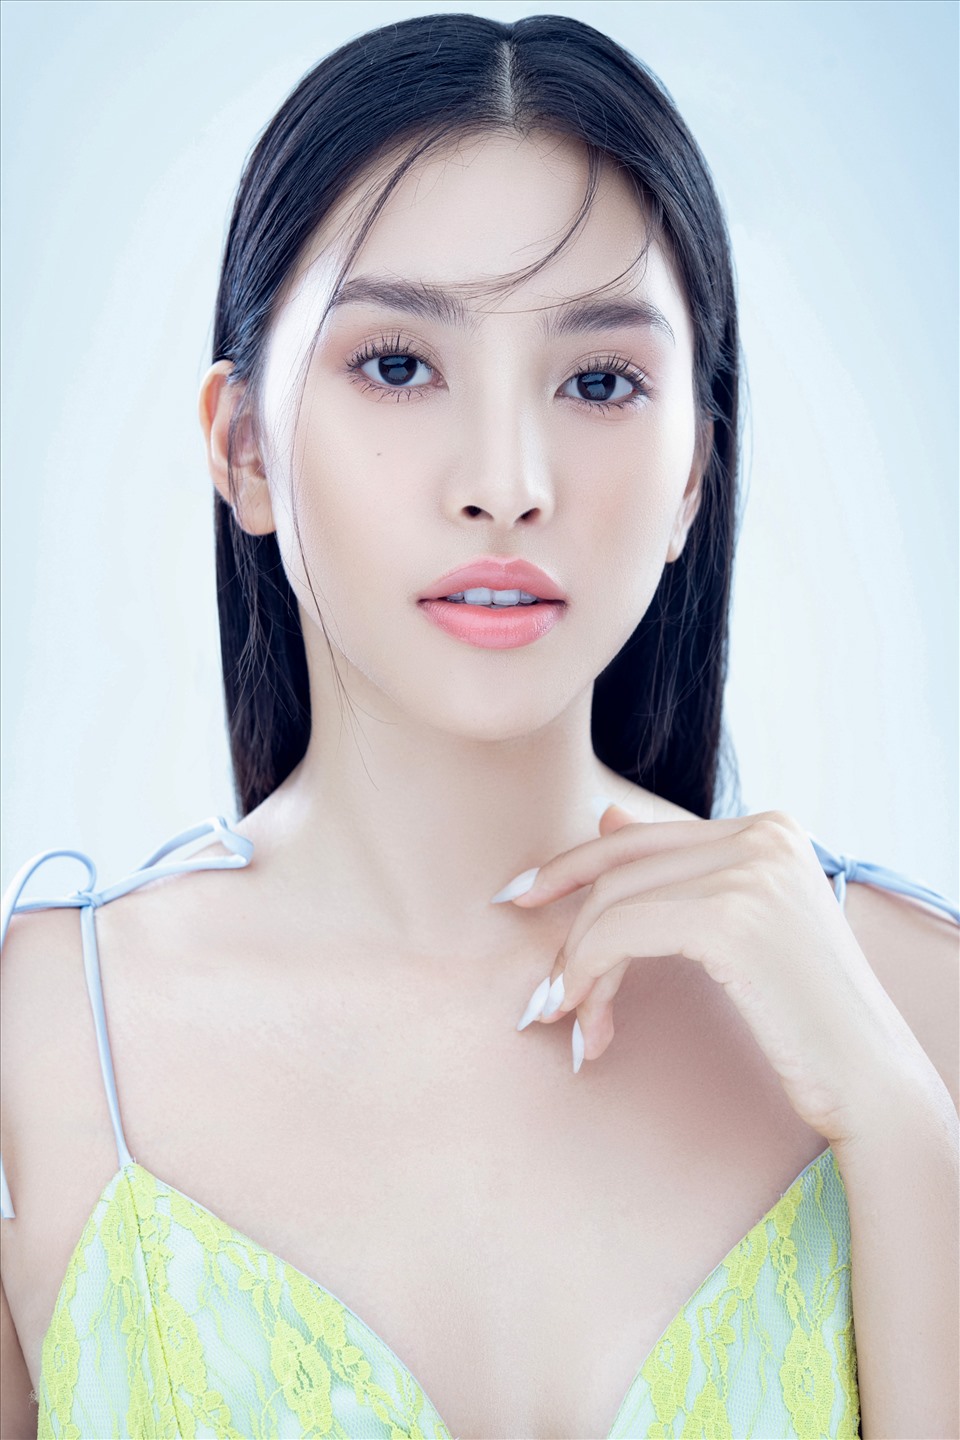 Trong cuộc thi Hoa hậu Việt Nam 2020 sắp tới đây Hoa hậu Tiểu Vy sẽ trở thành đại sứ của cuộc thi để cùng ban tổ chức tìm ra người kế nhiệm, kết thúc 2 năm nhiệm kỳ Hoa hậu đầy ấn tượng và đáng nhớ. Ảnh: Huỳnh Trí Nghĩa.